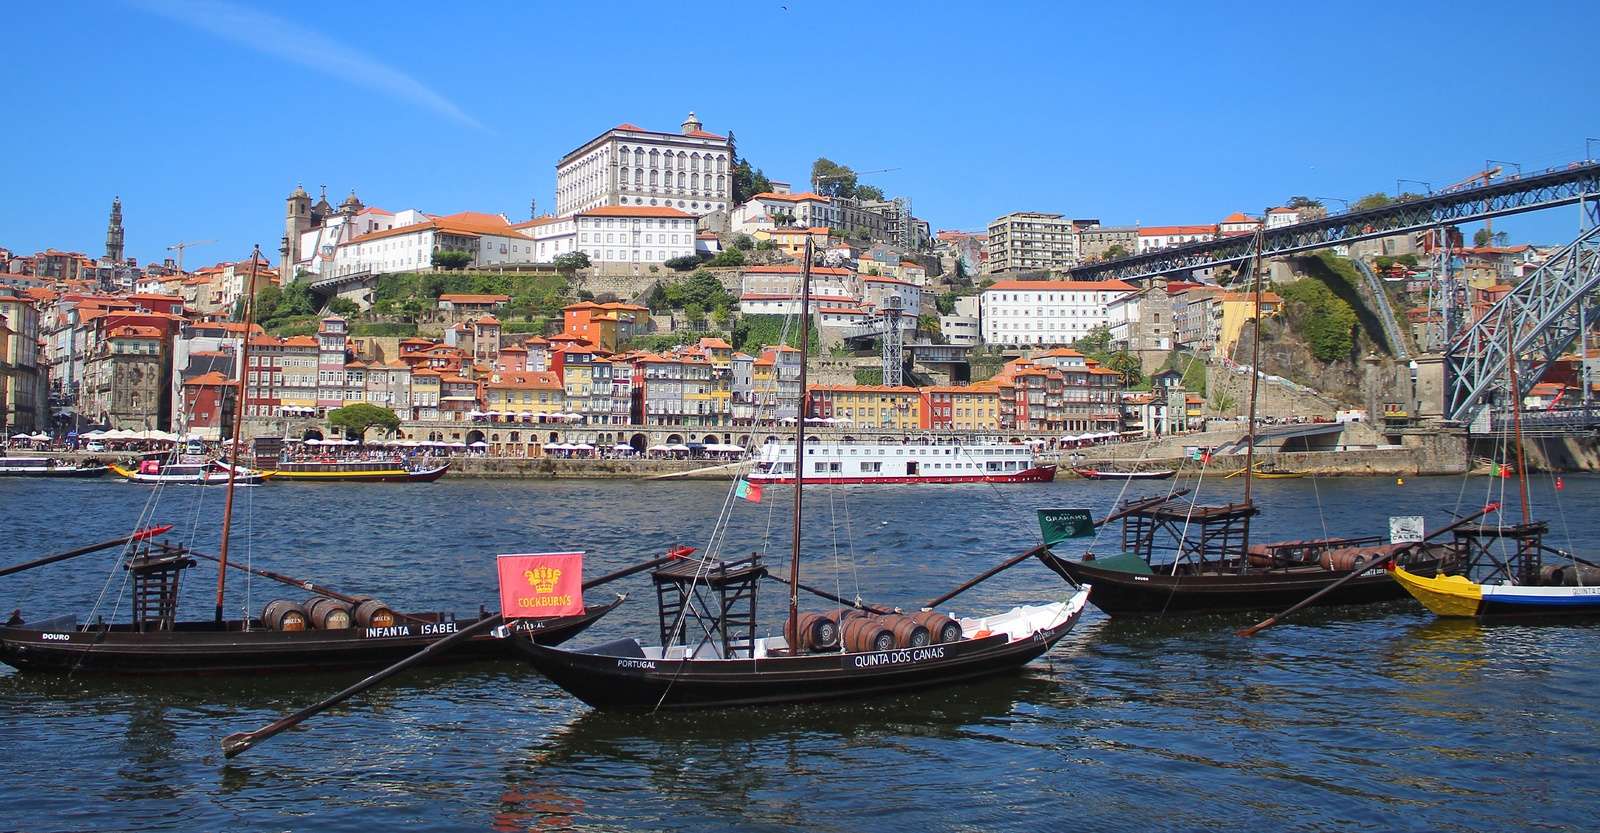 Boats and wine barrels, Luis I Bridge, Porto, Portugal.